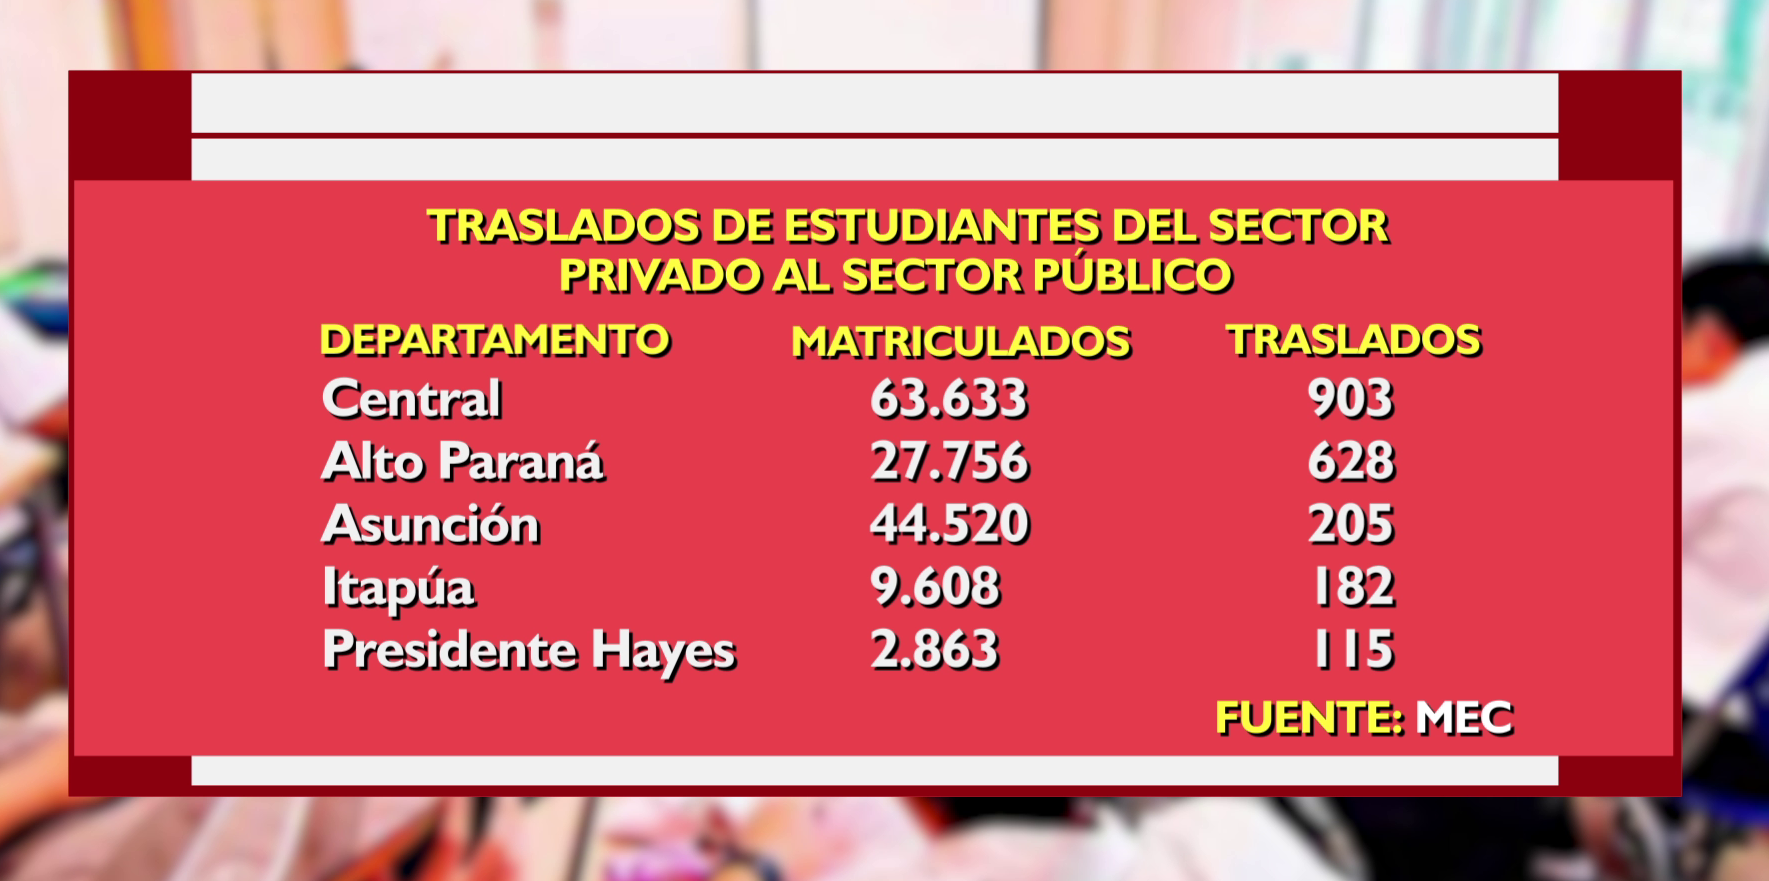 Traslados de estudiantes del sector privado al sector público. Fuente: Unicanal